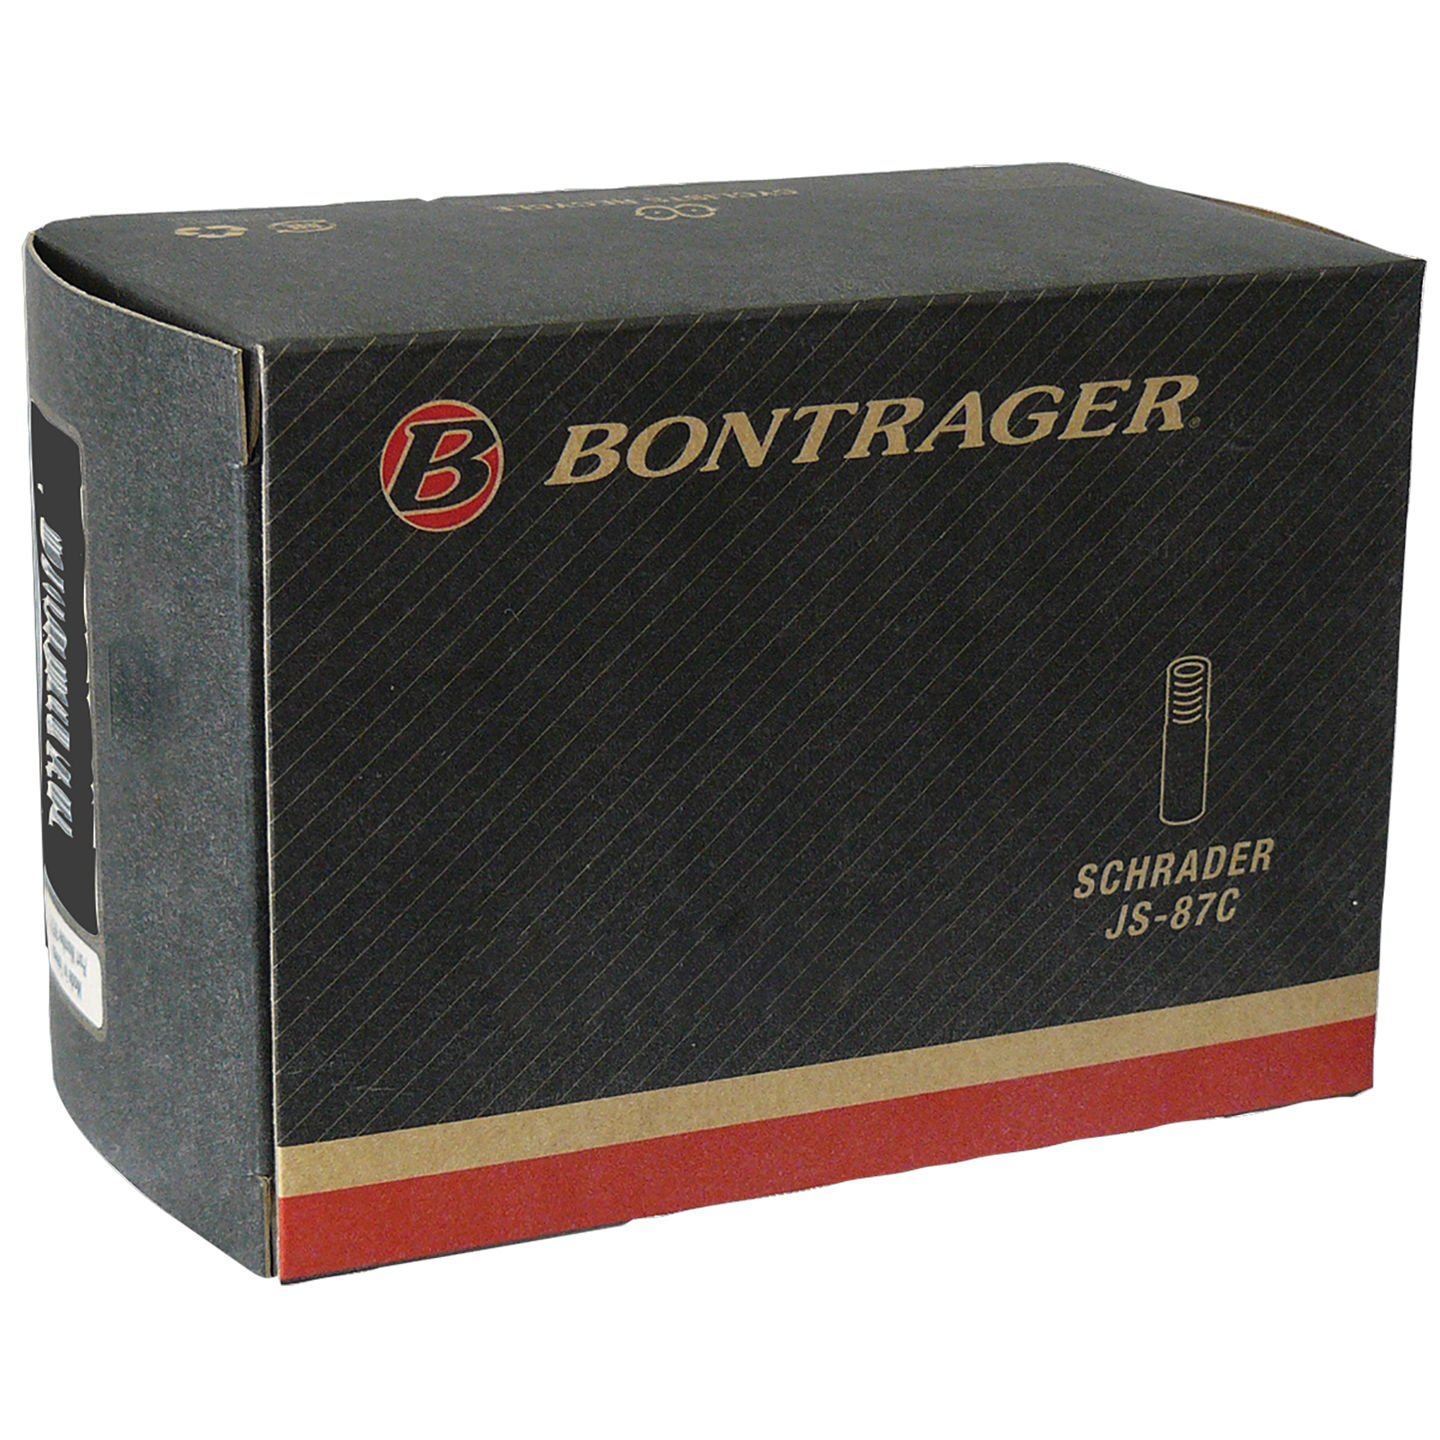 Камера велосипедная Bontrager Standard, 26x1.25-1.75, Presta 36mm, TCG-88449 камера велосипедная bontrager standard 700x34 44c 27 x1 3 8 1 3 4 presta 48mm tcg 64791